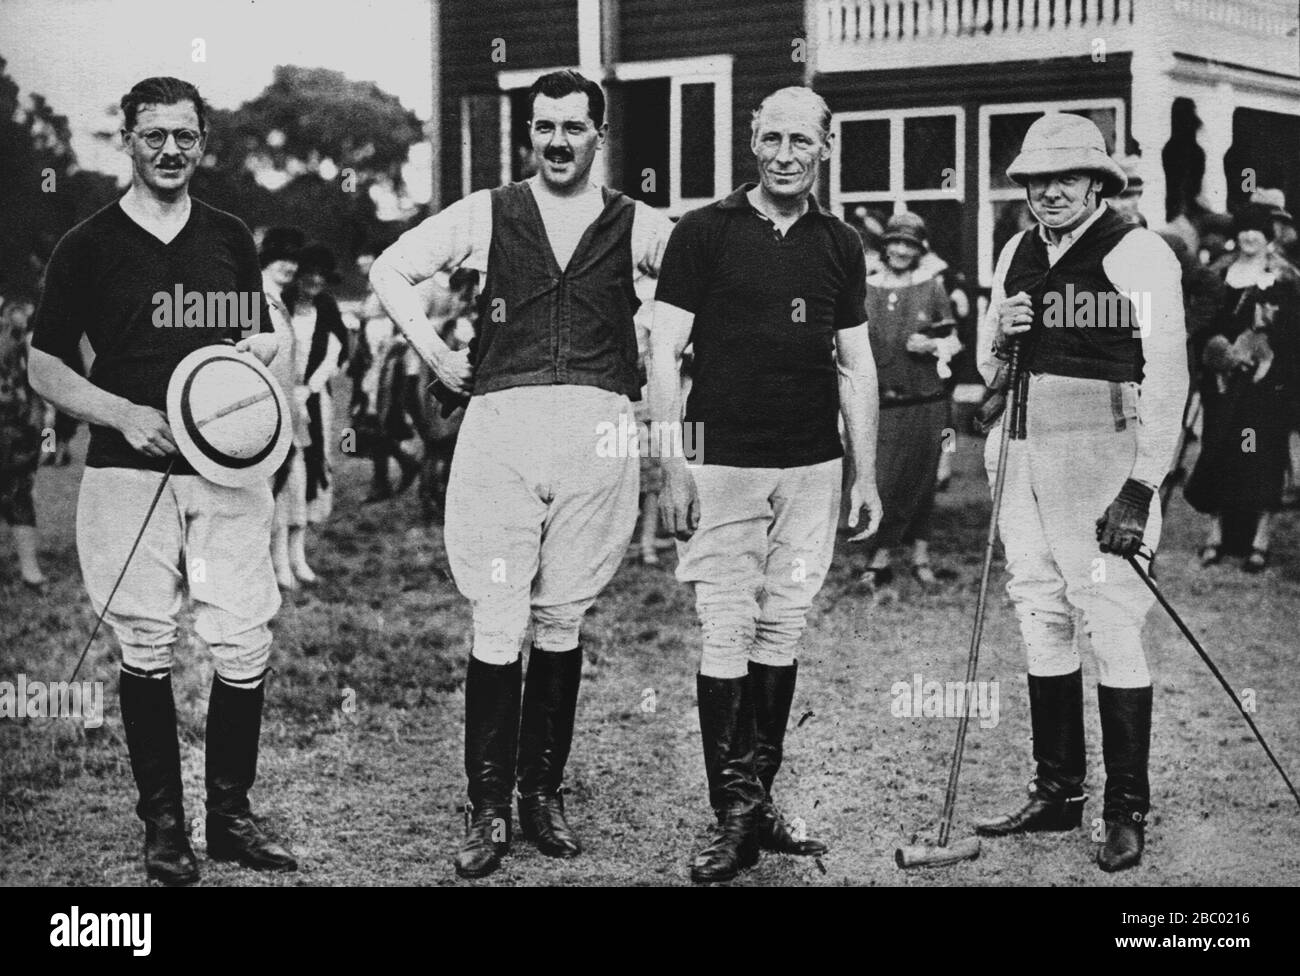 Winston Churchill avec l'équipe Polo de la Chambre des communes. L-R, capt. G.R.G., Shaw, capt.E.Wallace, capt. F.E.Guest, WSC. 18 juillet 1925. Banque D'Images